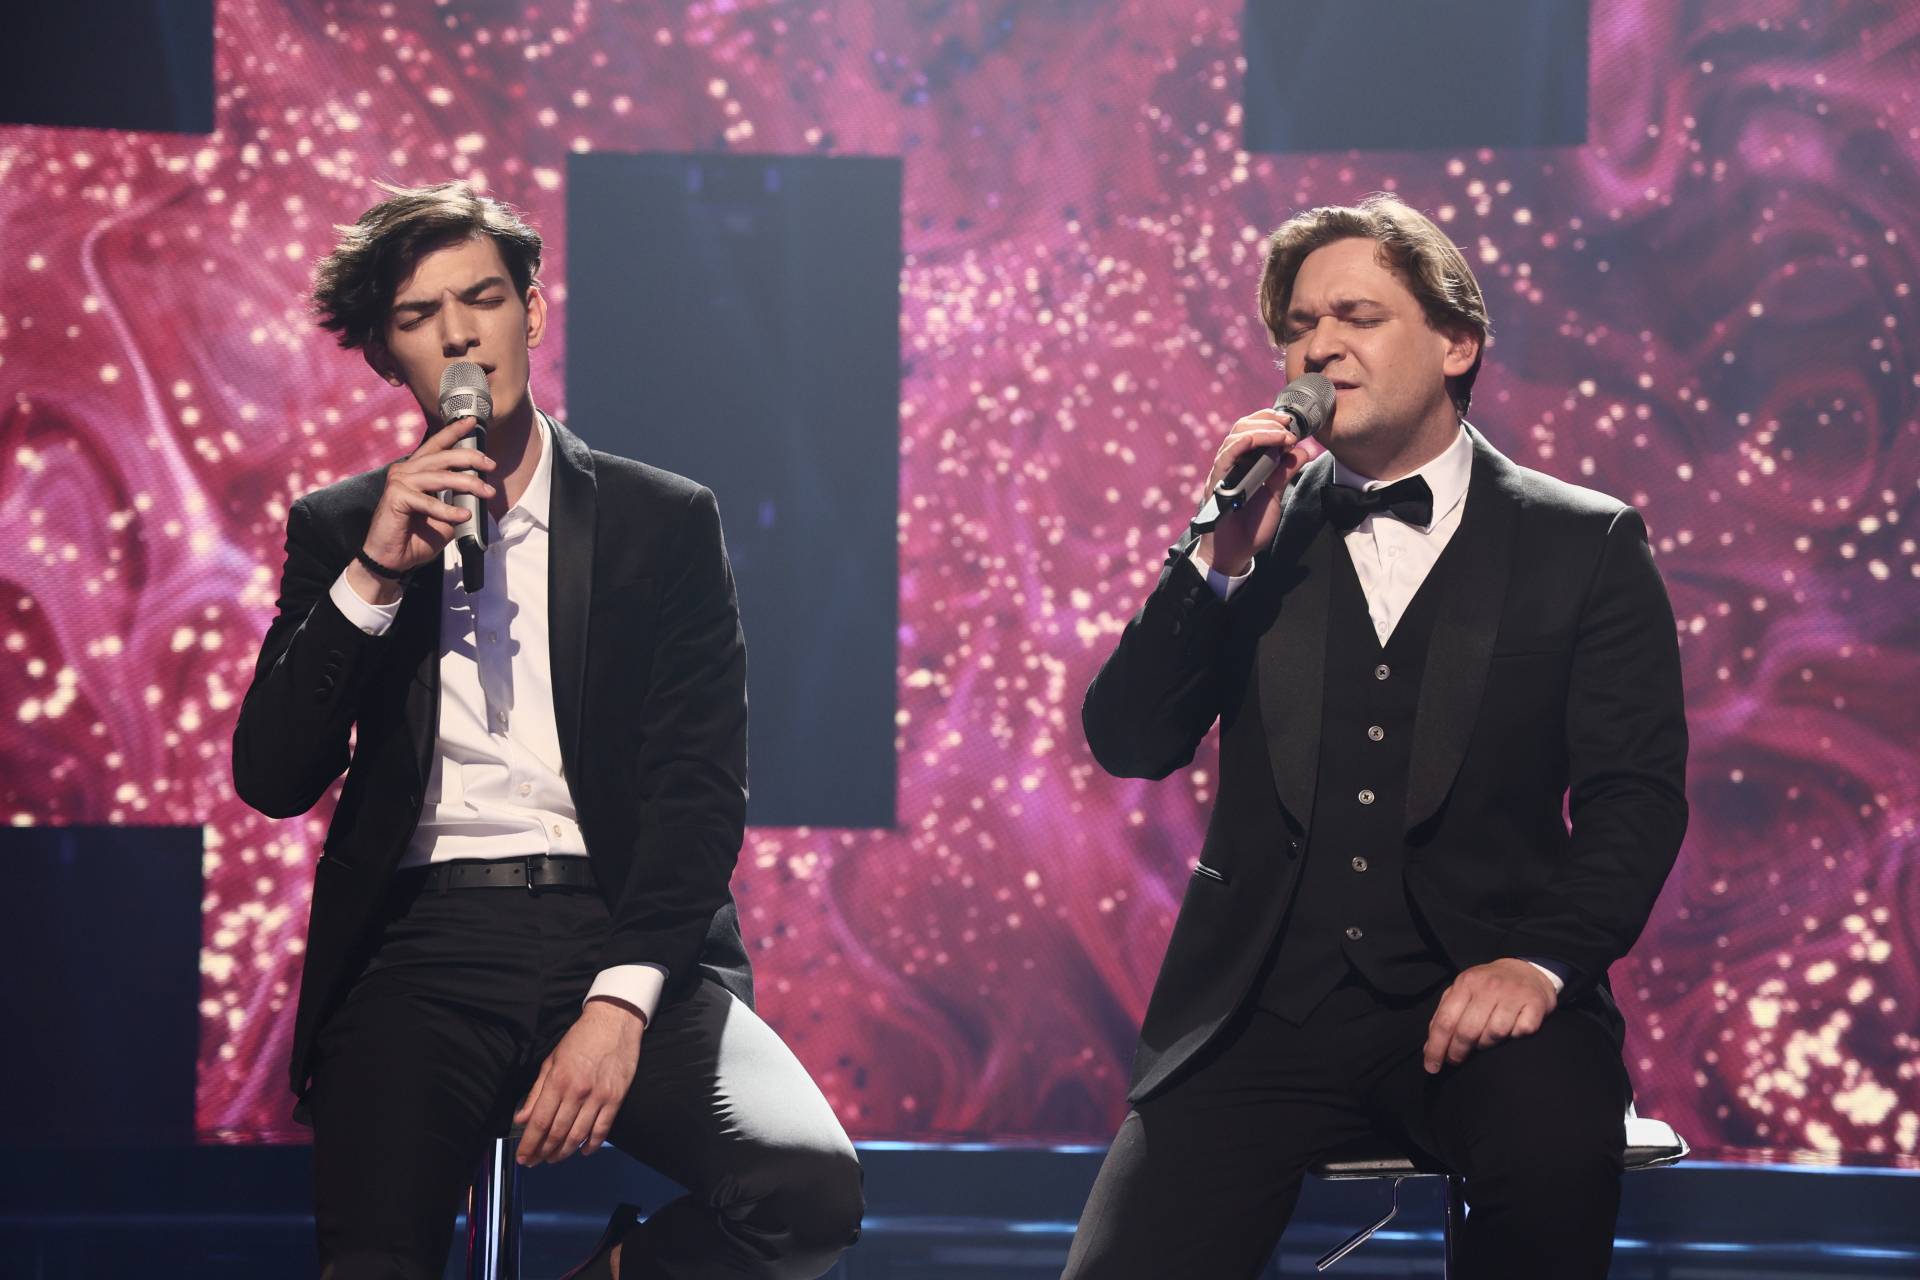 Pobjednici 12. sezone 'Zvijezde pjevaju' su Lovro i Vjeko